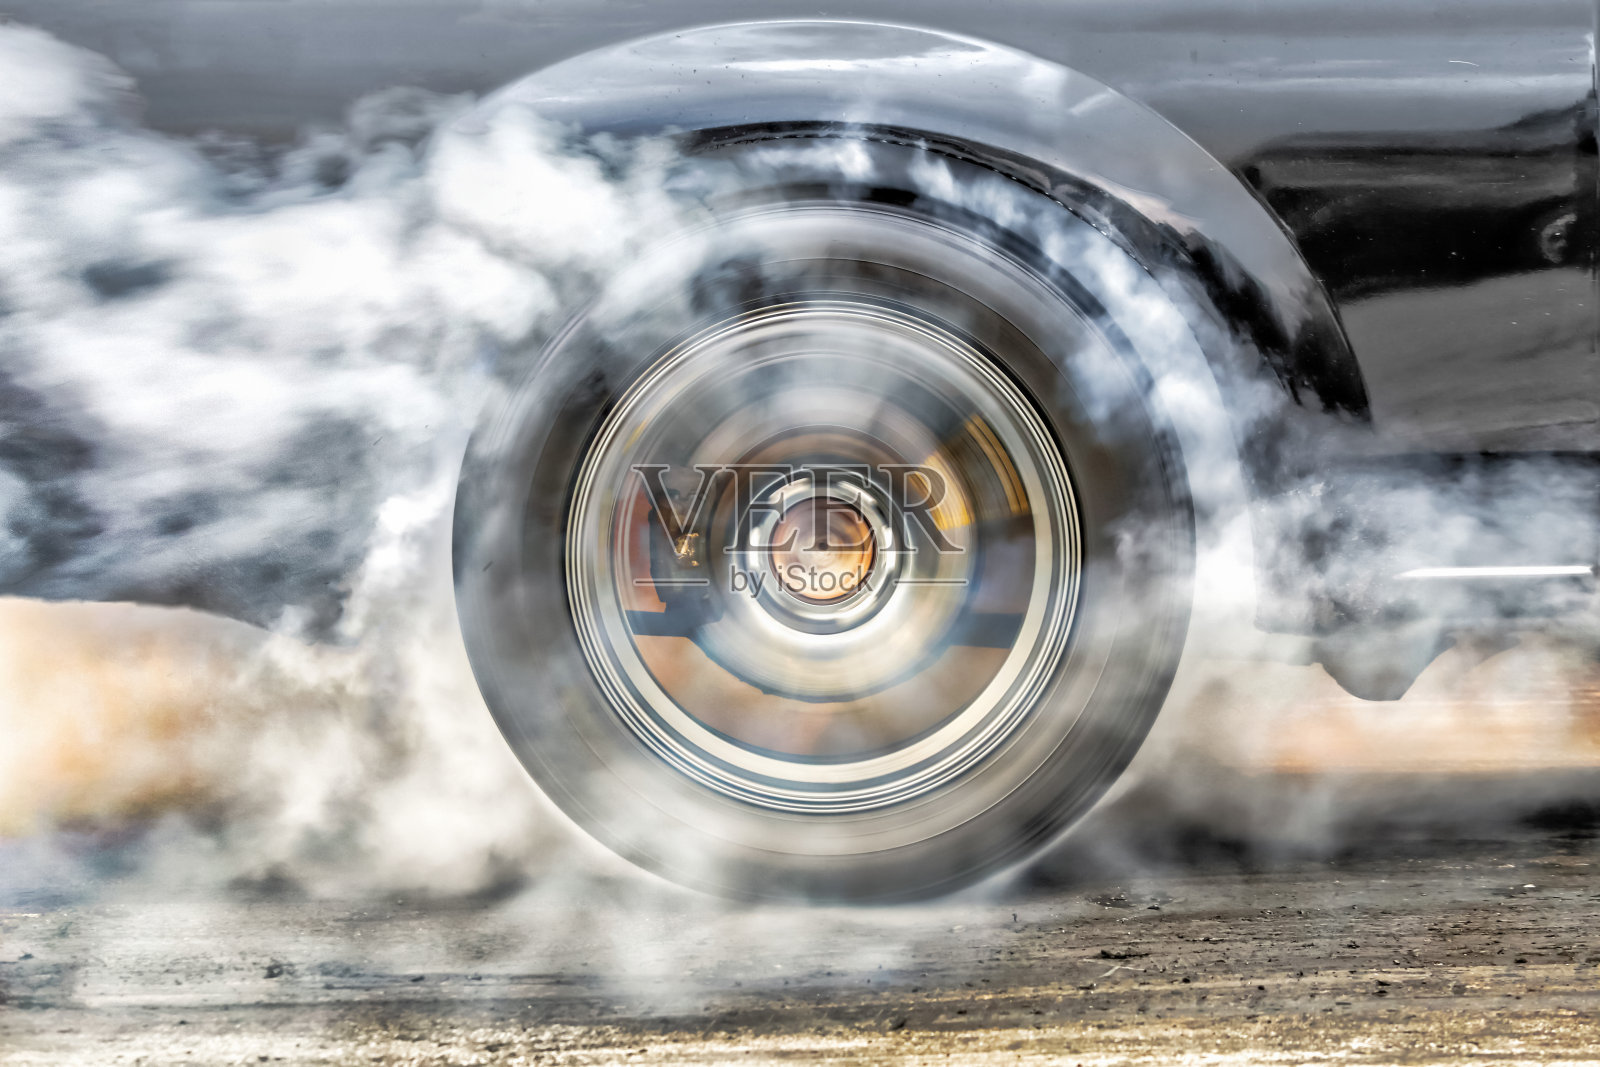 短程赛车为准备比赛而把轮胎上的橡胶烧掉照片摄影图片